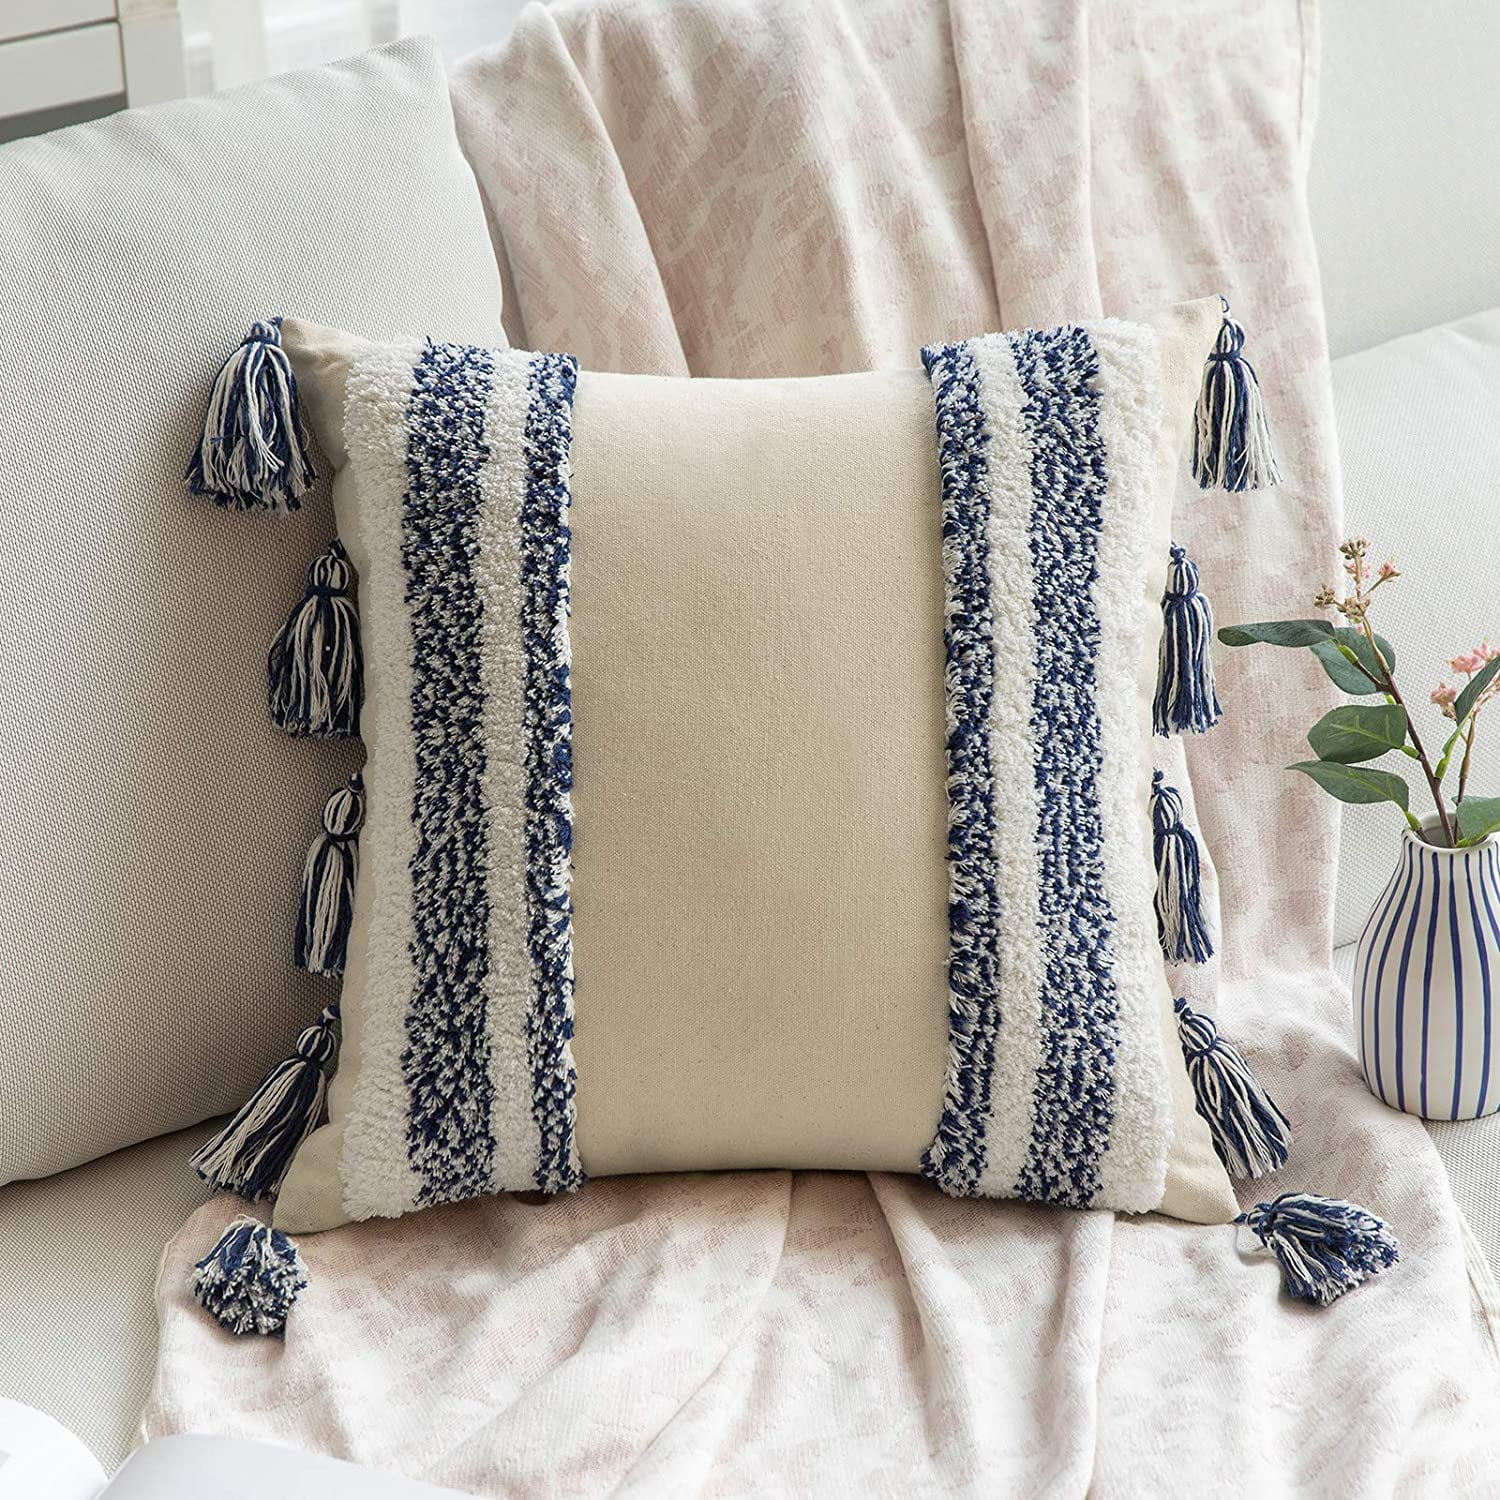 Pillowslip Pillow Case Throw Pillow Covers Home Sofa Cushion Decor Cover Case 